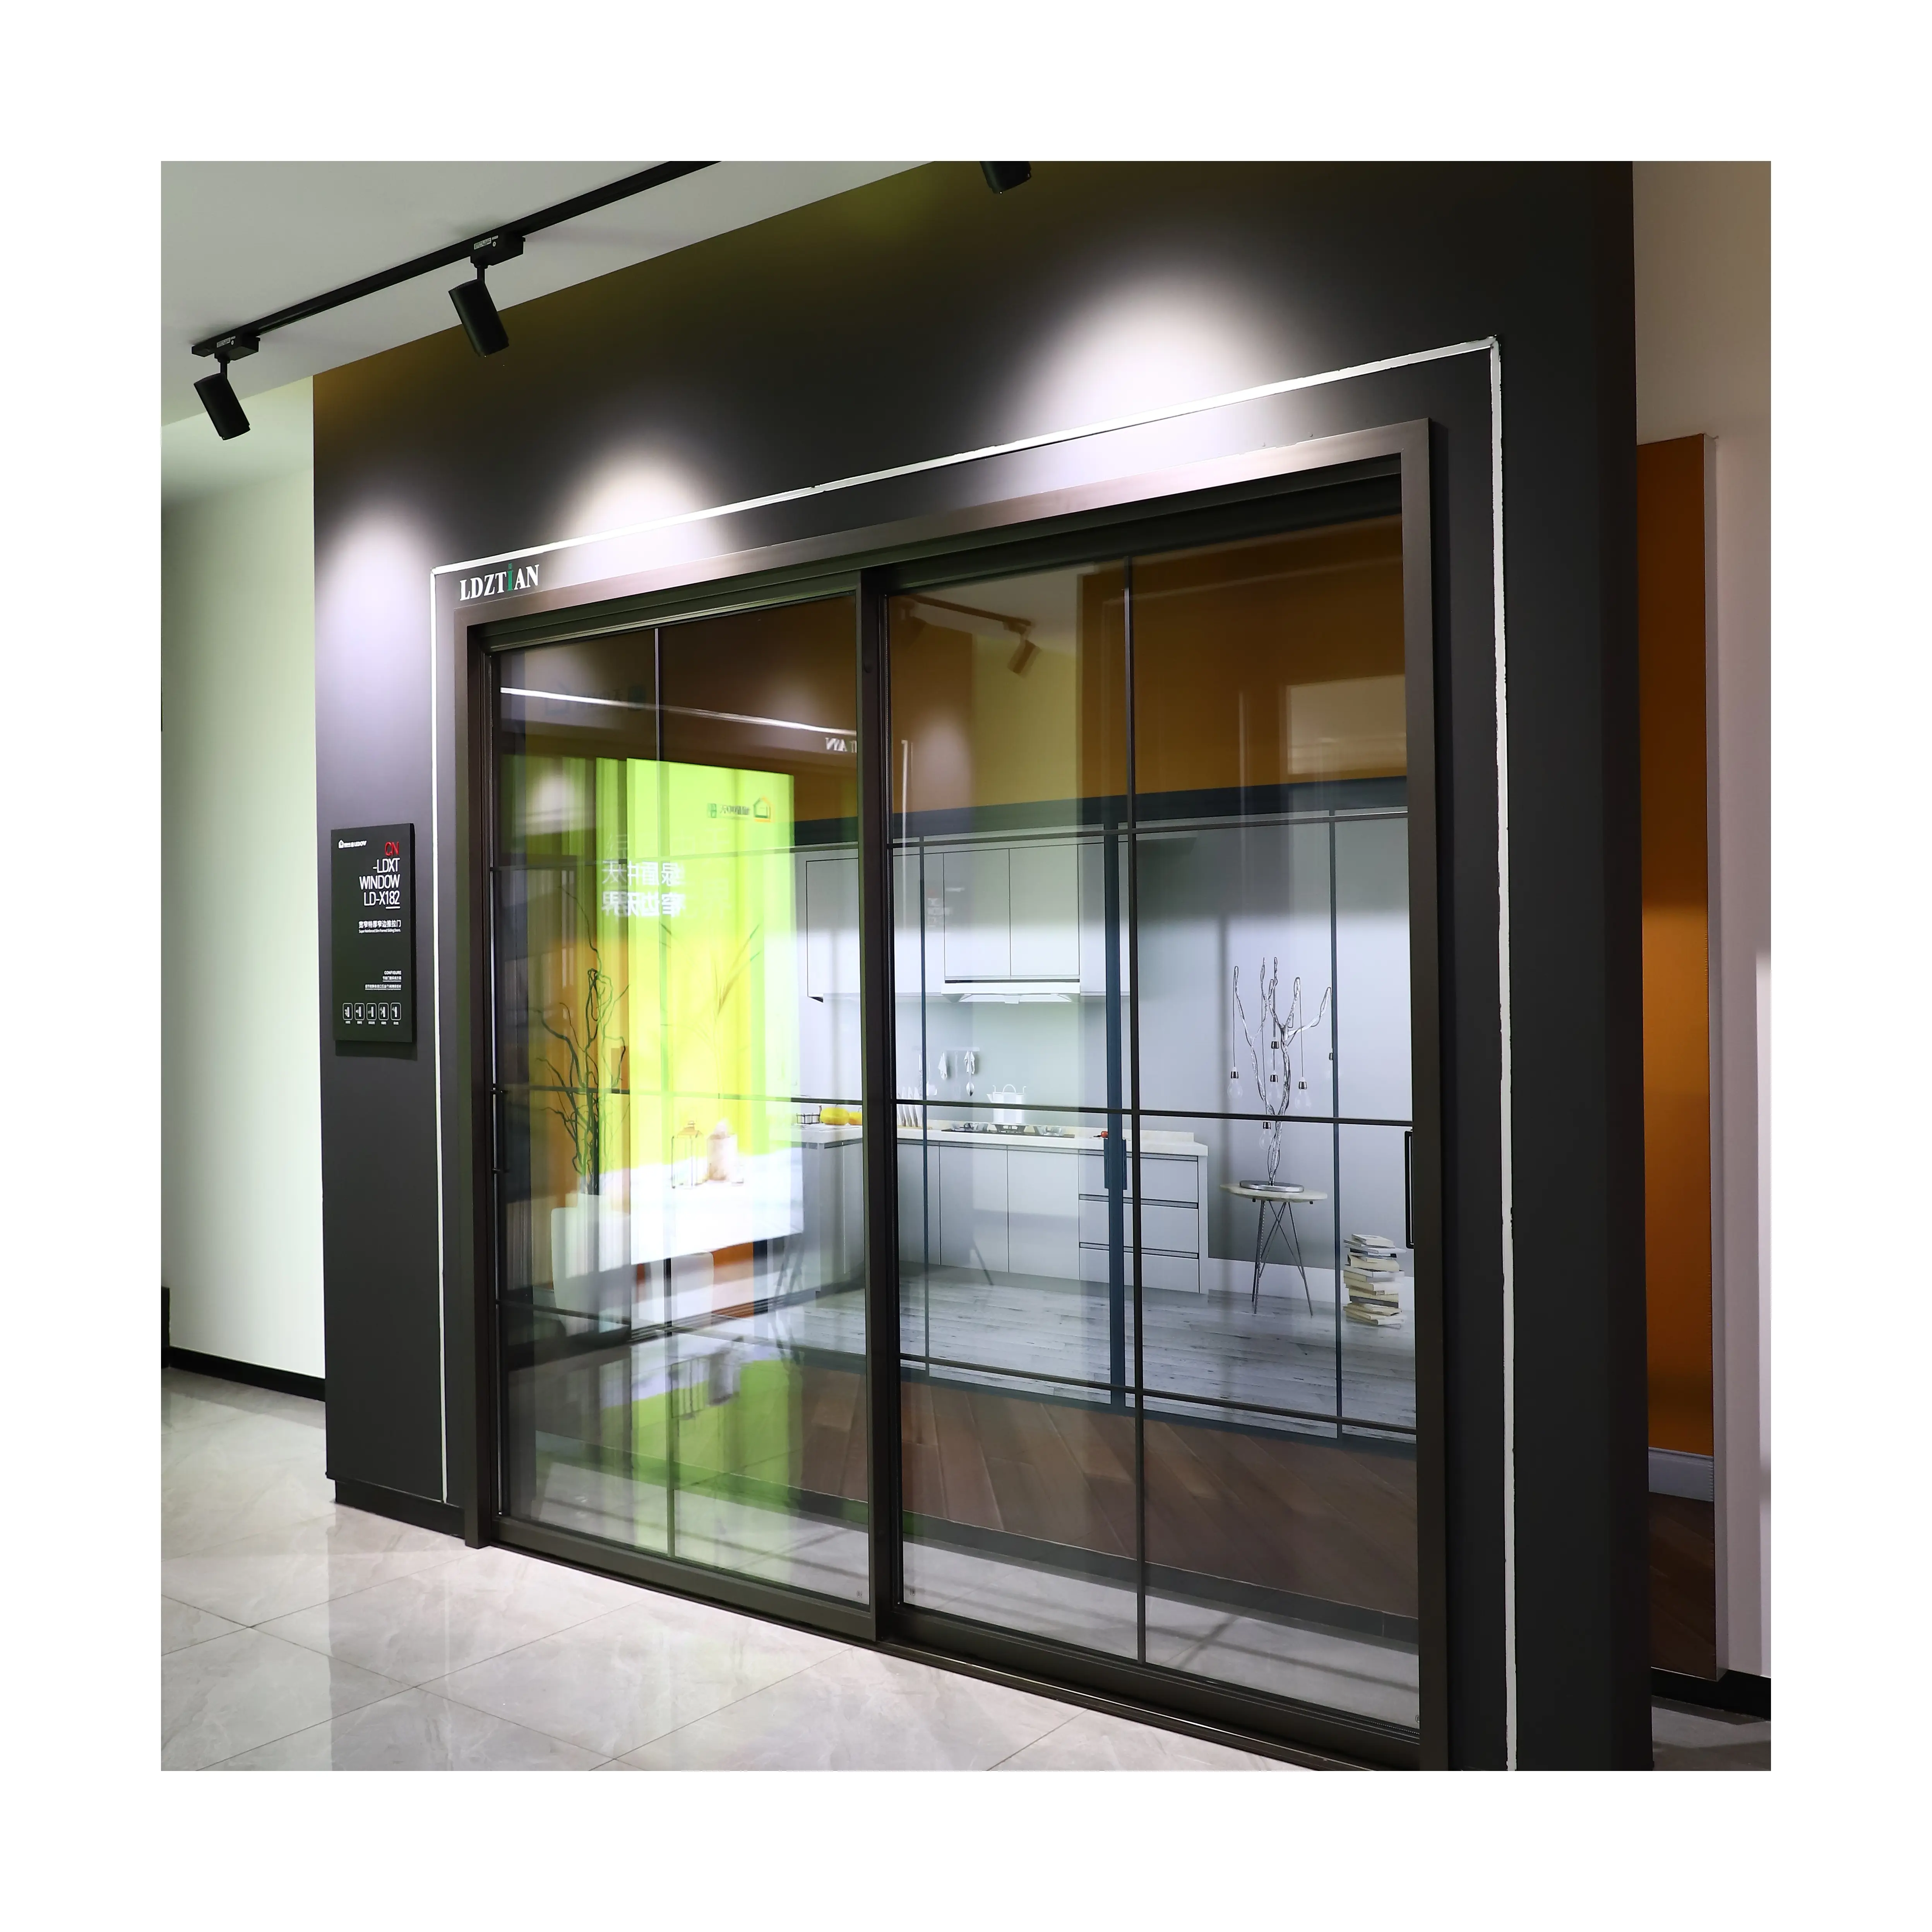 Moderno semplice risparmio energetico grande vetro bidirezionale porta scorrevole silenzioso porta scorrevole ufficio